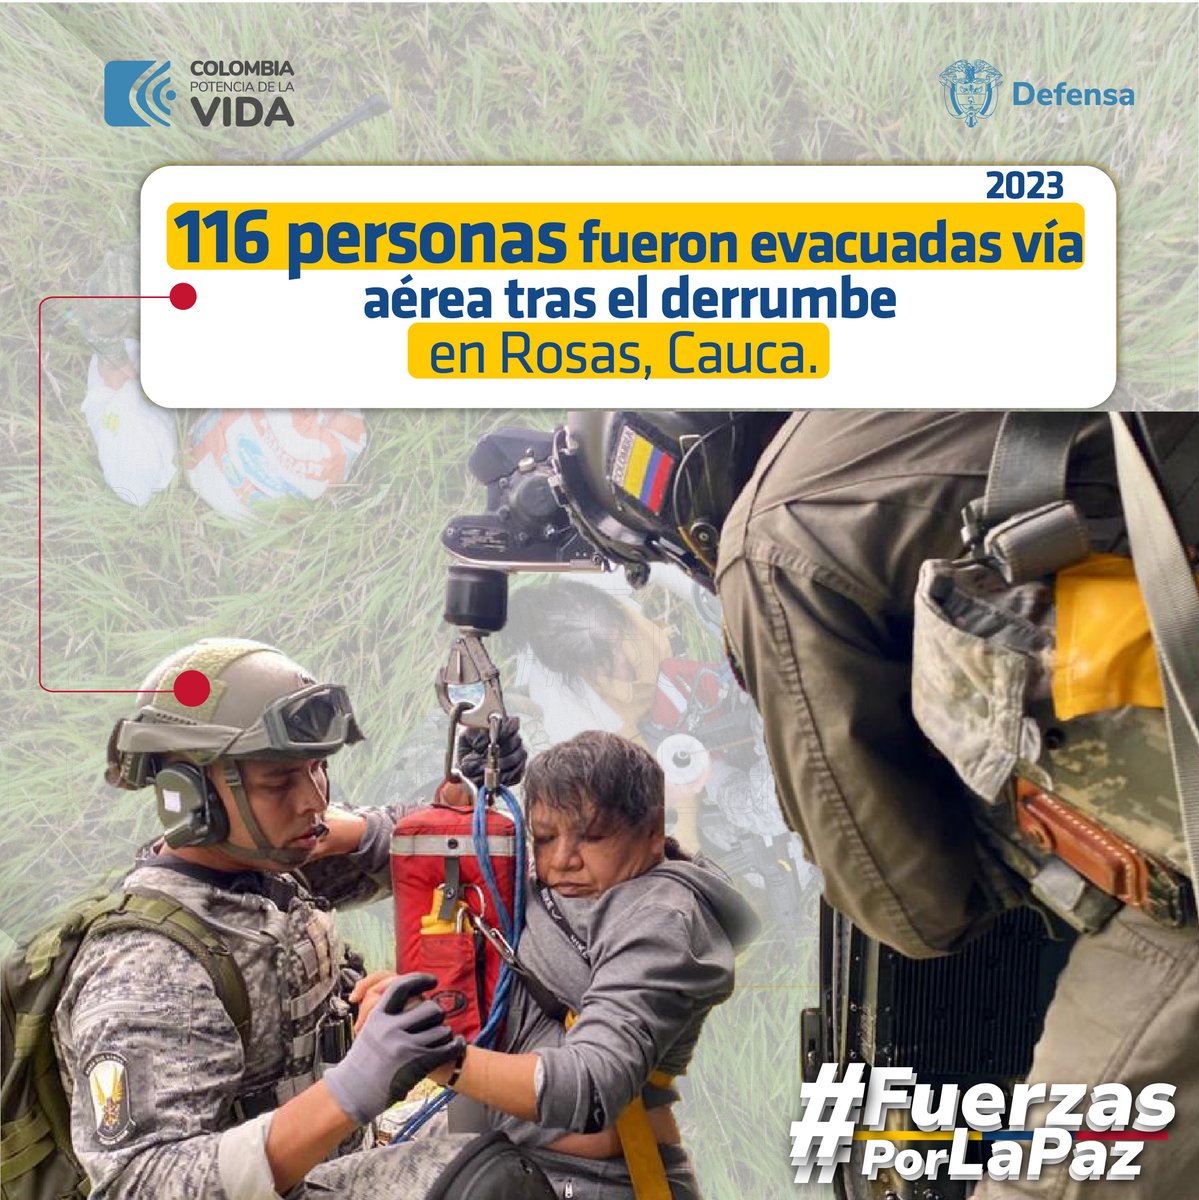 #FuerzasPorLaPaz | Luego del desastre natural que provocó un derrumbe en Rosas #Cauca, 116 personas fueron evacuadas vía aérea en un helicóptero Black Hawk de la @FuerzaAereaCol, denominado “Ángel”, trasladando de manera segura y oportuna a varias familias.

#ProtegemosLaVida